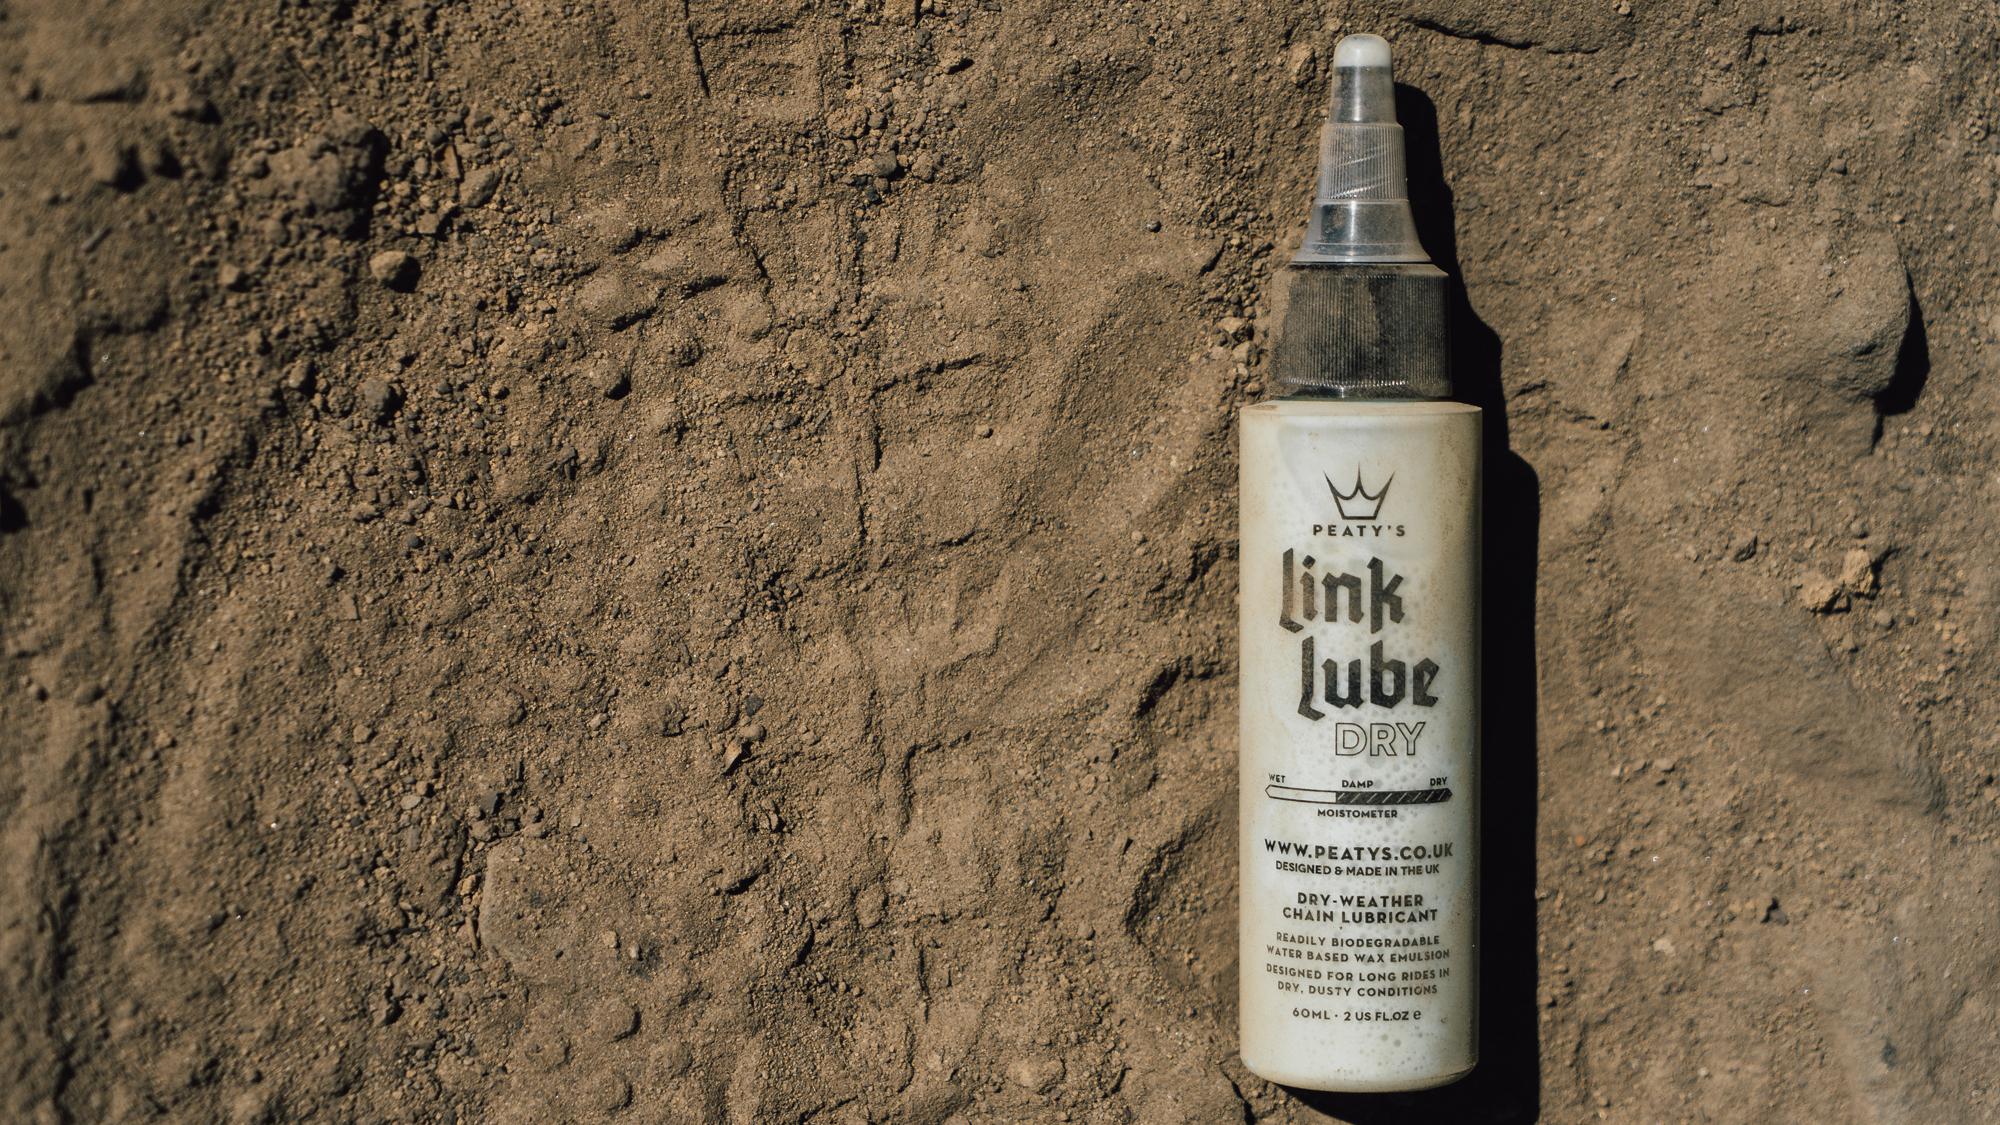 Linklube Dry: für trockene und staubige Bedingungen.